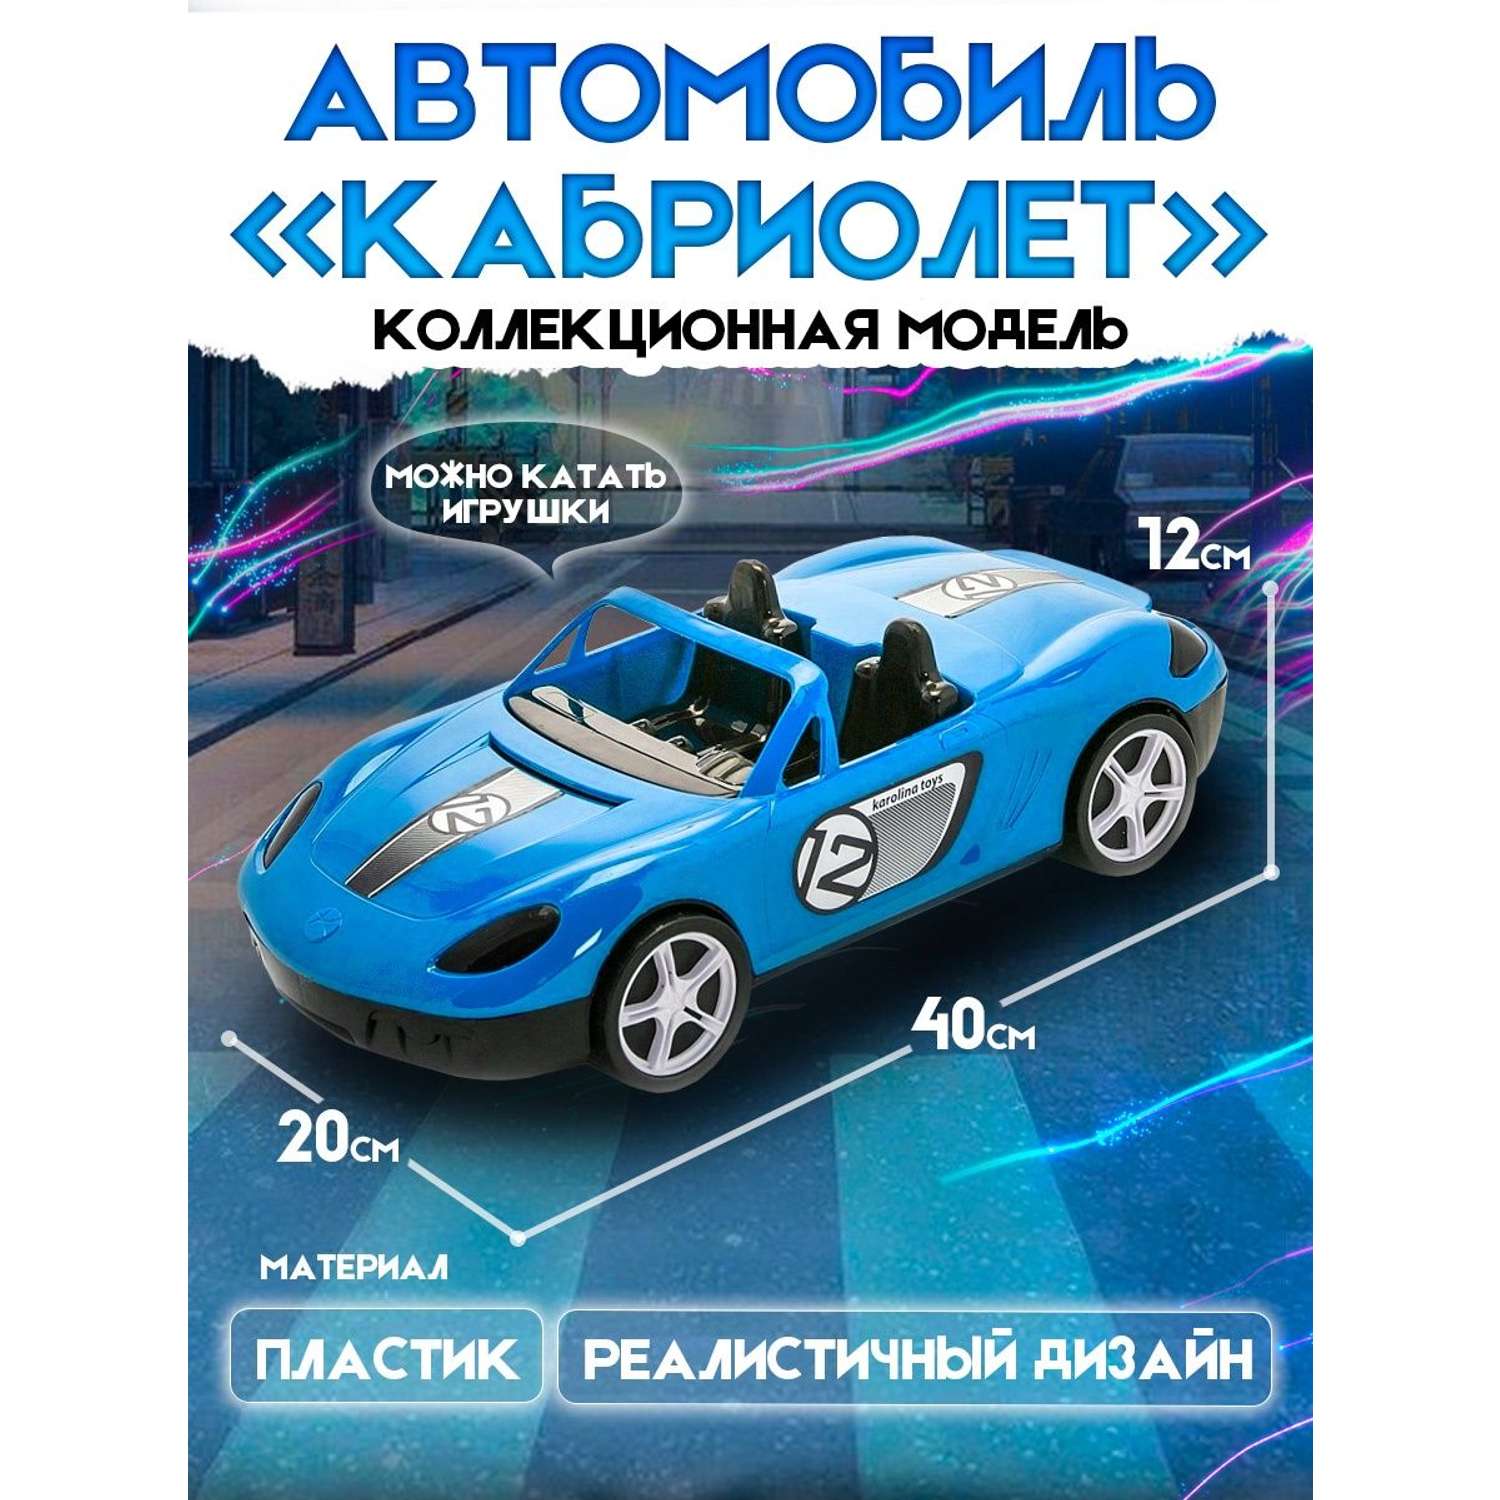 Машинка Karolinatoys Кабриолет пластмассовая синяя 40-0034/синий - фото 2